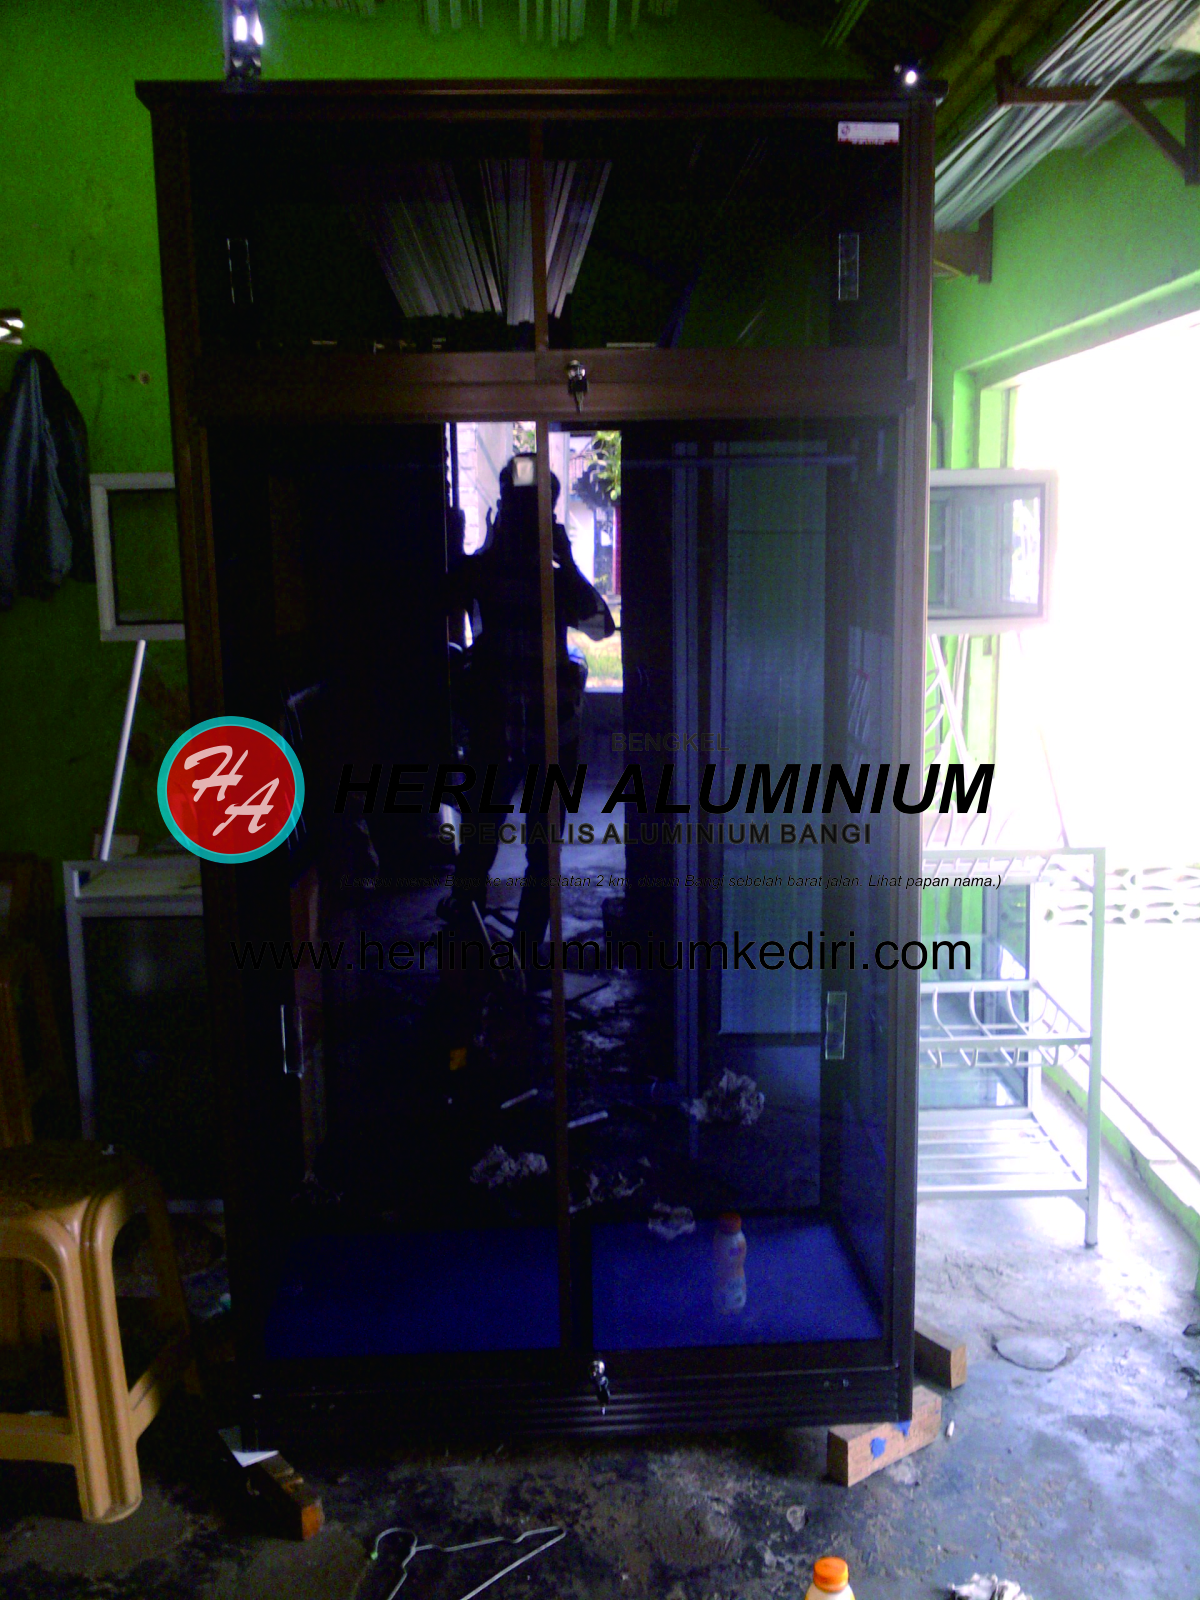 Daftar harga lemari pakaian aluminium Kediri Jawa Timur 